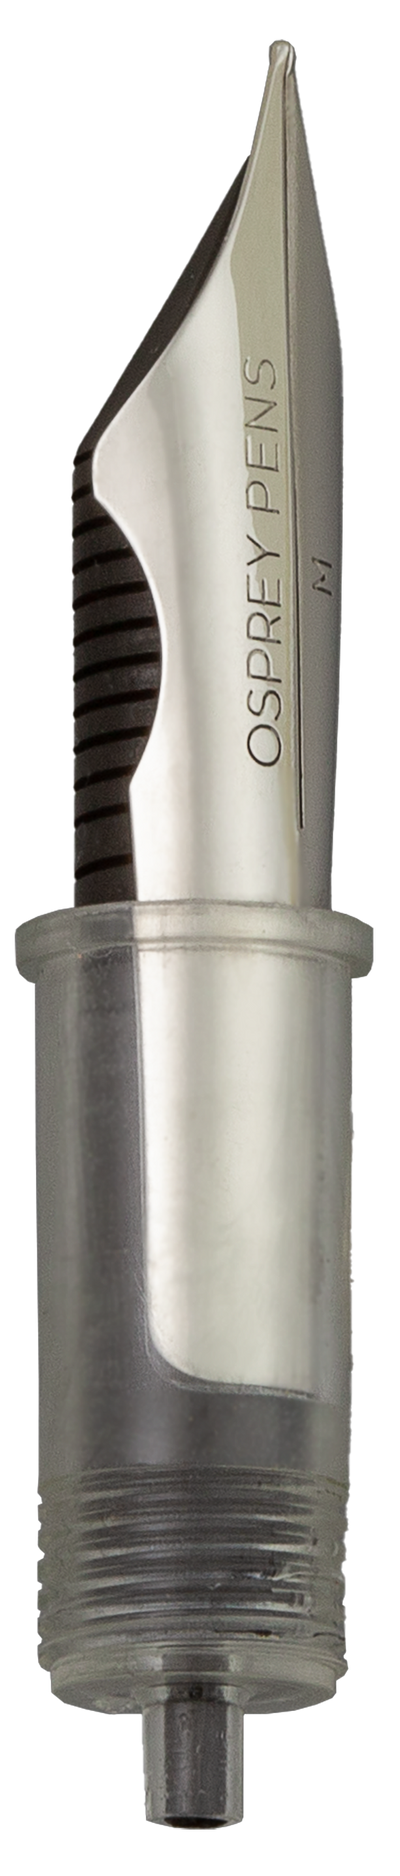 Jowo-compatible Nib Unit with Osprey #6 Ultra-flex Steel nib with Ebonite feed